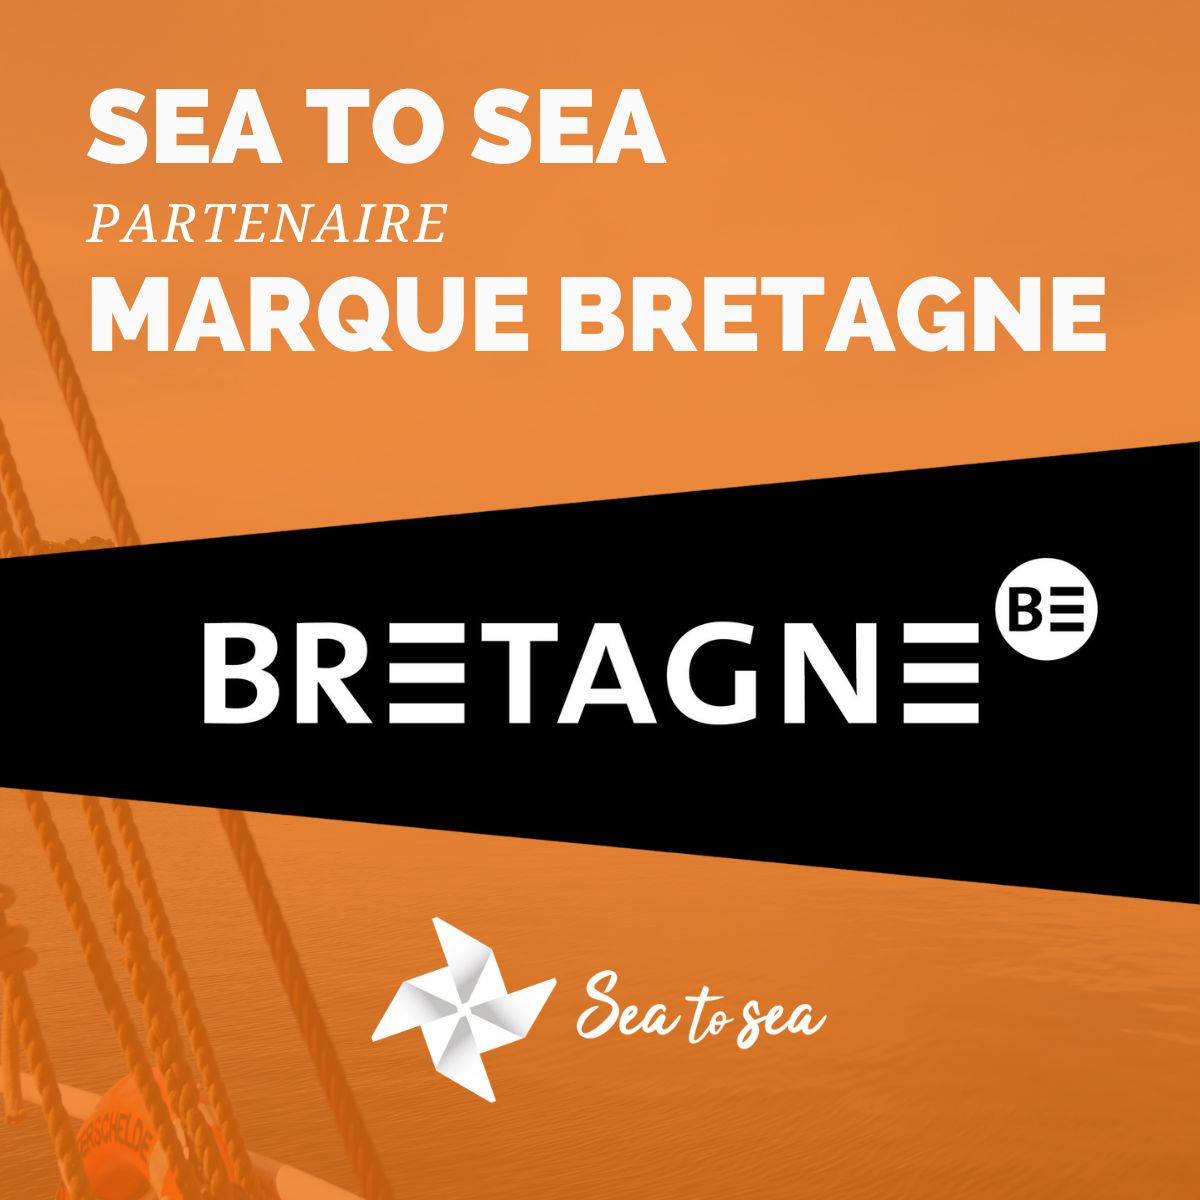 Sea to sea est fière d'être partenaire de la @MarqueBretagne ! A l’issue du dernier Comité de marque, Sea to sea fait désormais partie des 1023 partenaires de la #MarqueBretagne. Sea to sea, une agence bretonne et fière de l'être ! #bretagne #bzh #maritime @regionbretagne